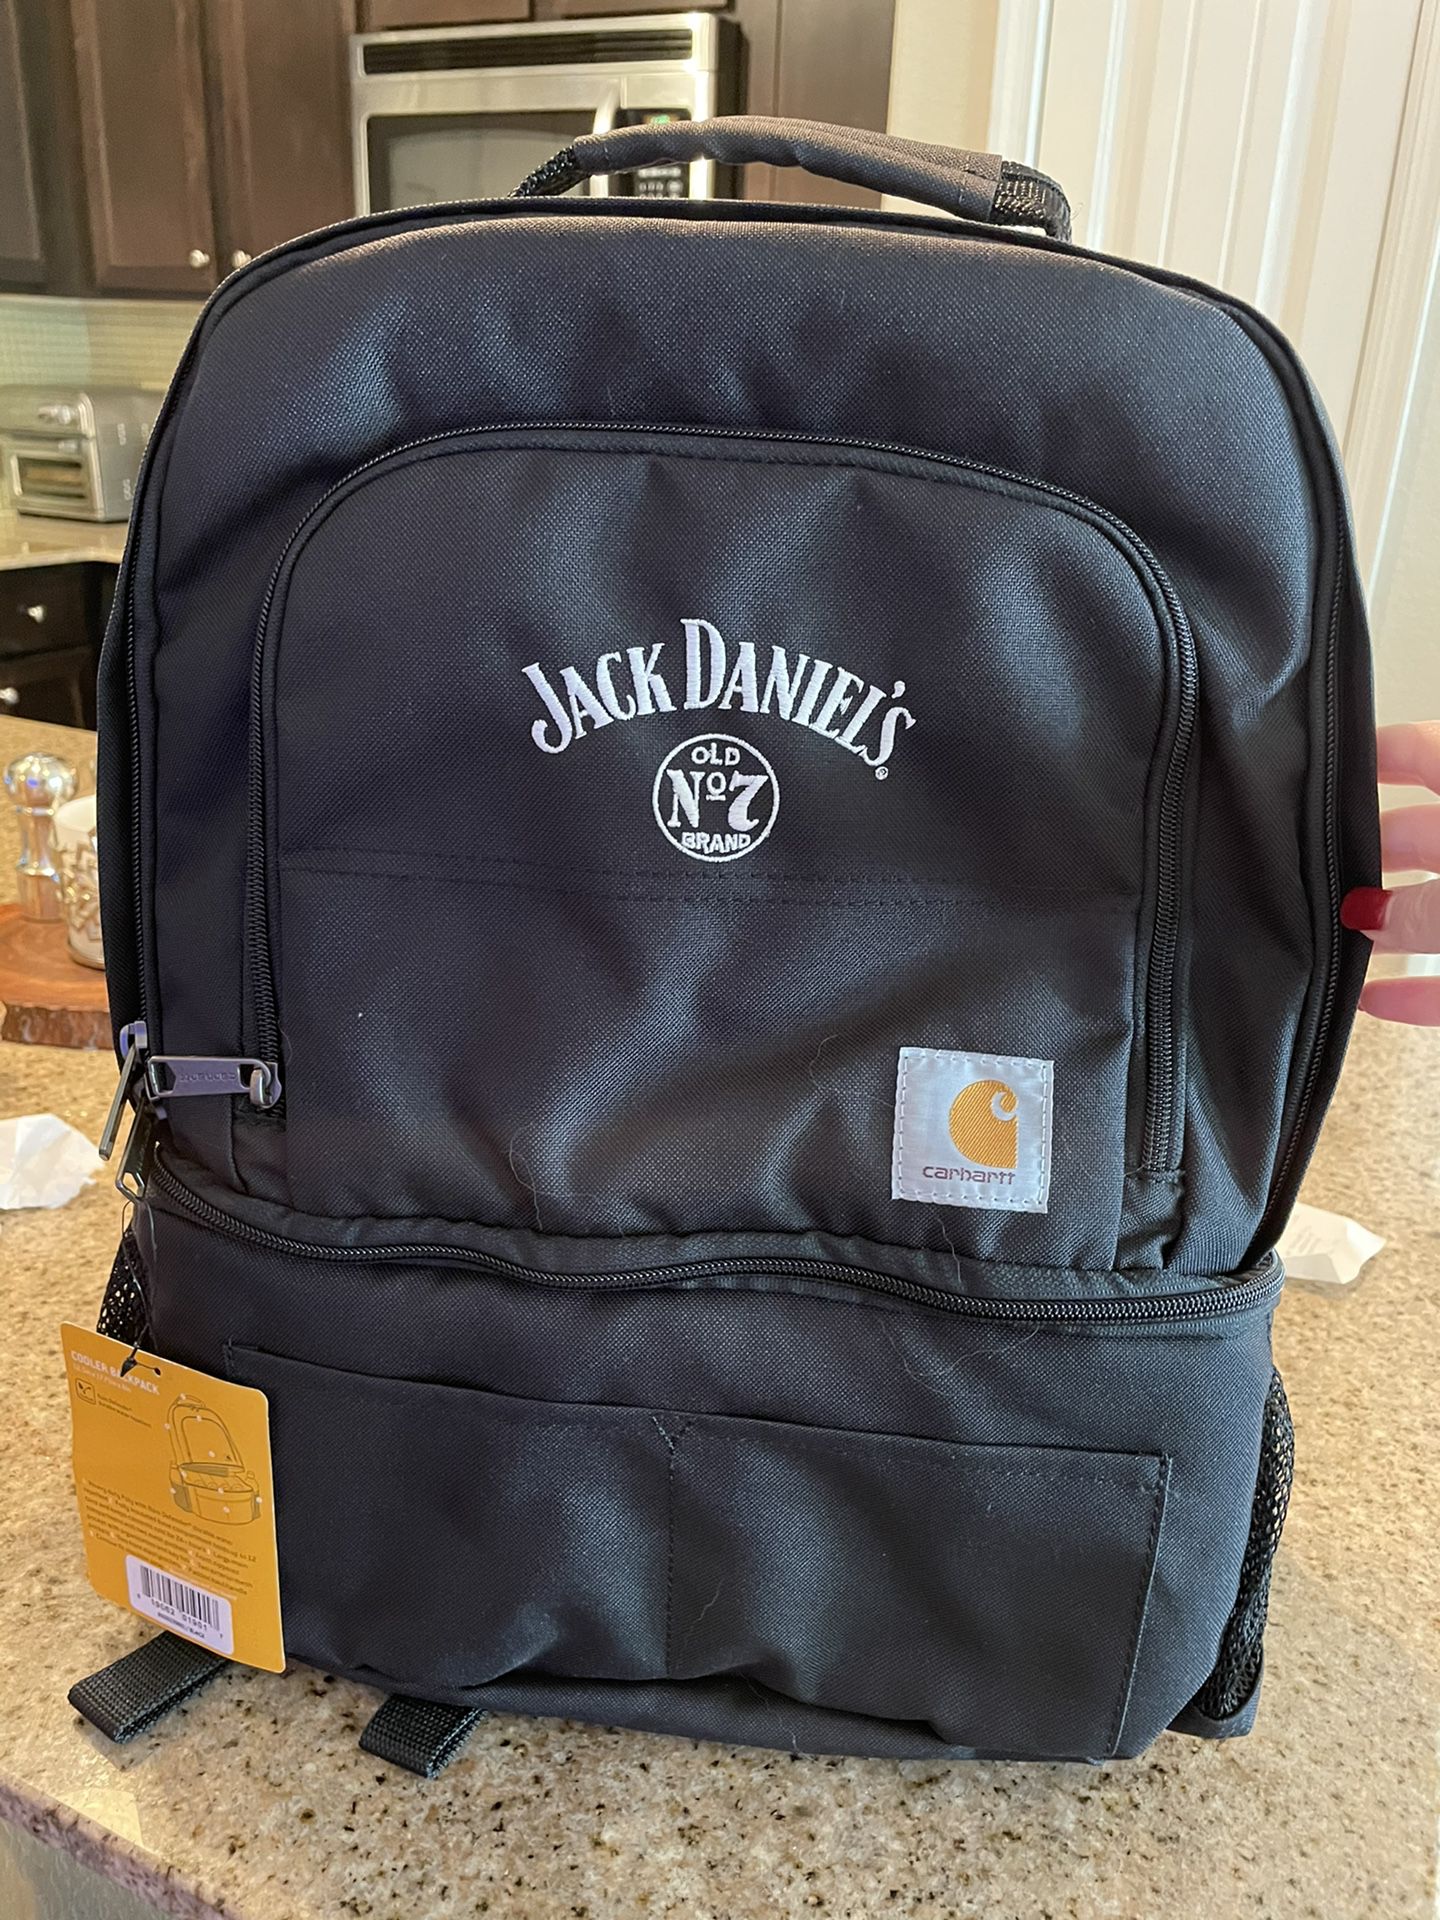 Jack Daniels Carhartt Cooler Backpack for Sale in Fort Lauderdale, FL -  OfferUp